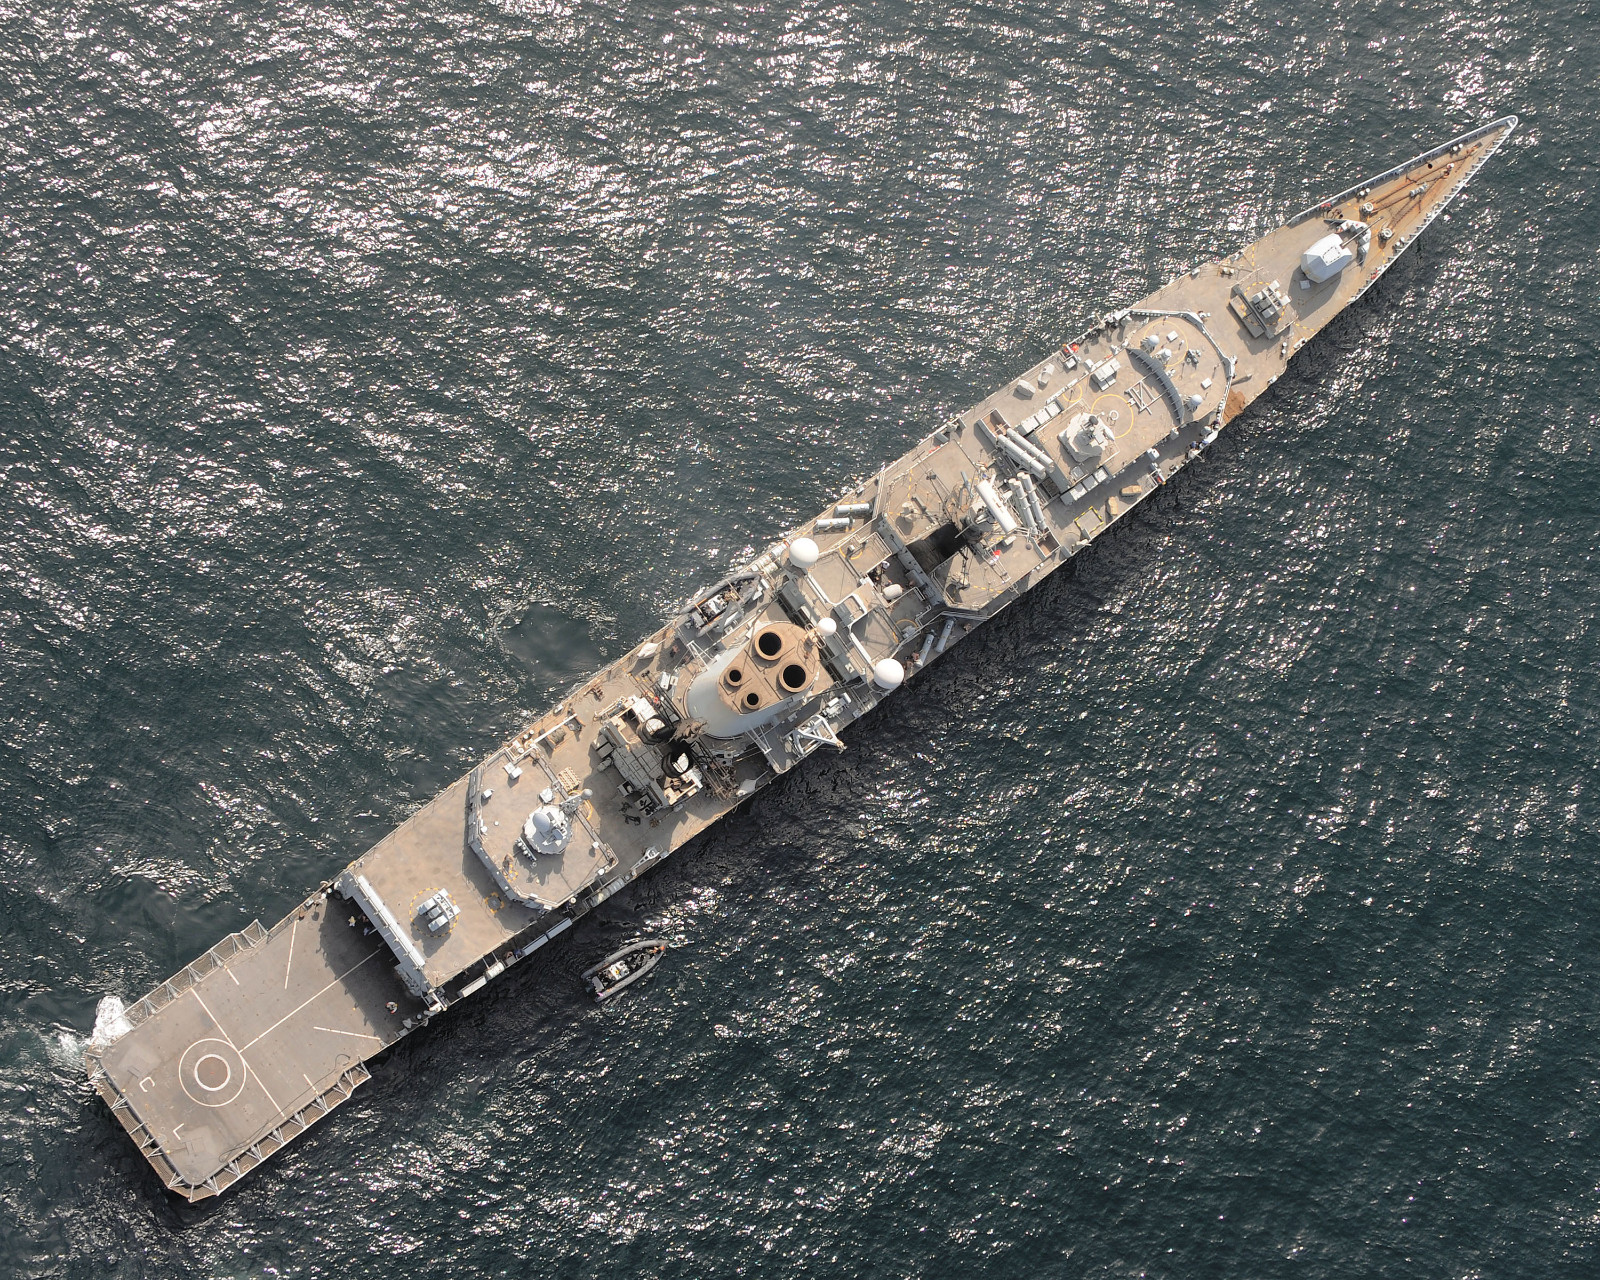 英国皇家海军"前卫"号战列舰 历史上最后一艘服役的战列舰（2）-千龙网·中国首都网